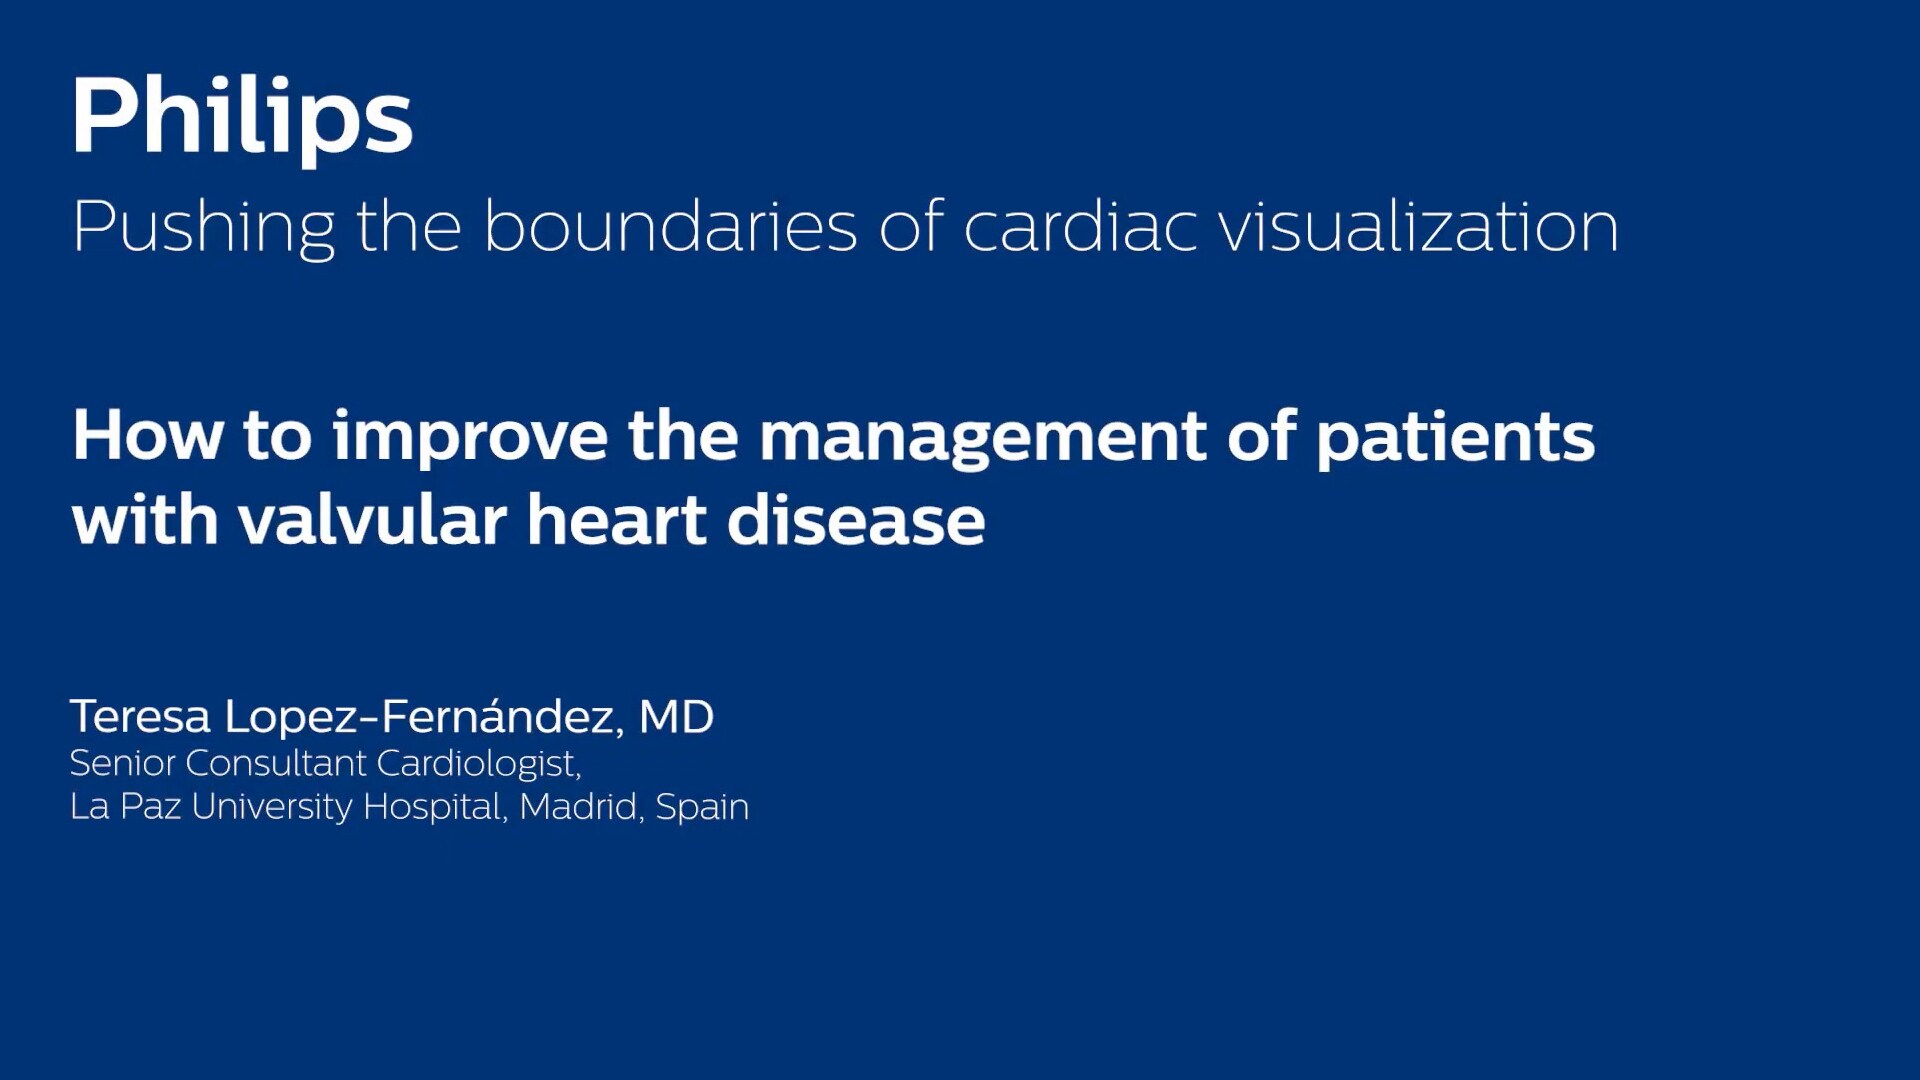  Wie lässt sich die Behandlung von Patienten mit Herzklappenerkrankungen optimieren?